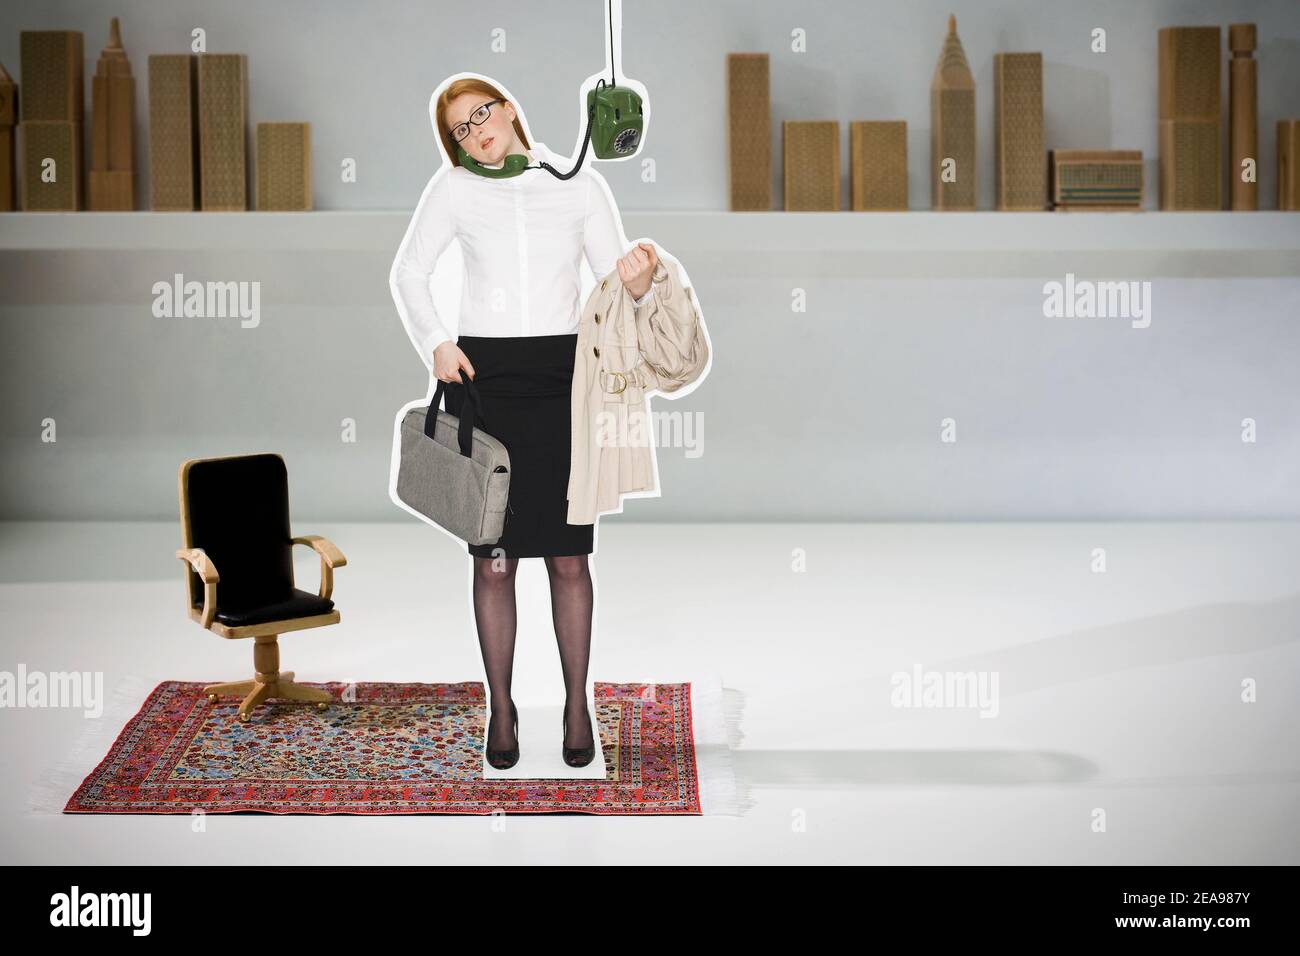 Fotocollage, Frau mit Trenchcoat über dem Arm, Telefon am Ohr, Laptoptasche in der Hand, mit Business-Outfit, auf rotem Teppich, mit Bürostuhl, vor einem Regal, mit Skyline Stockfoto